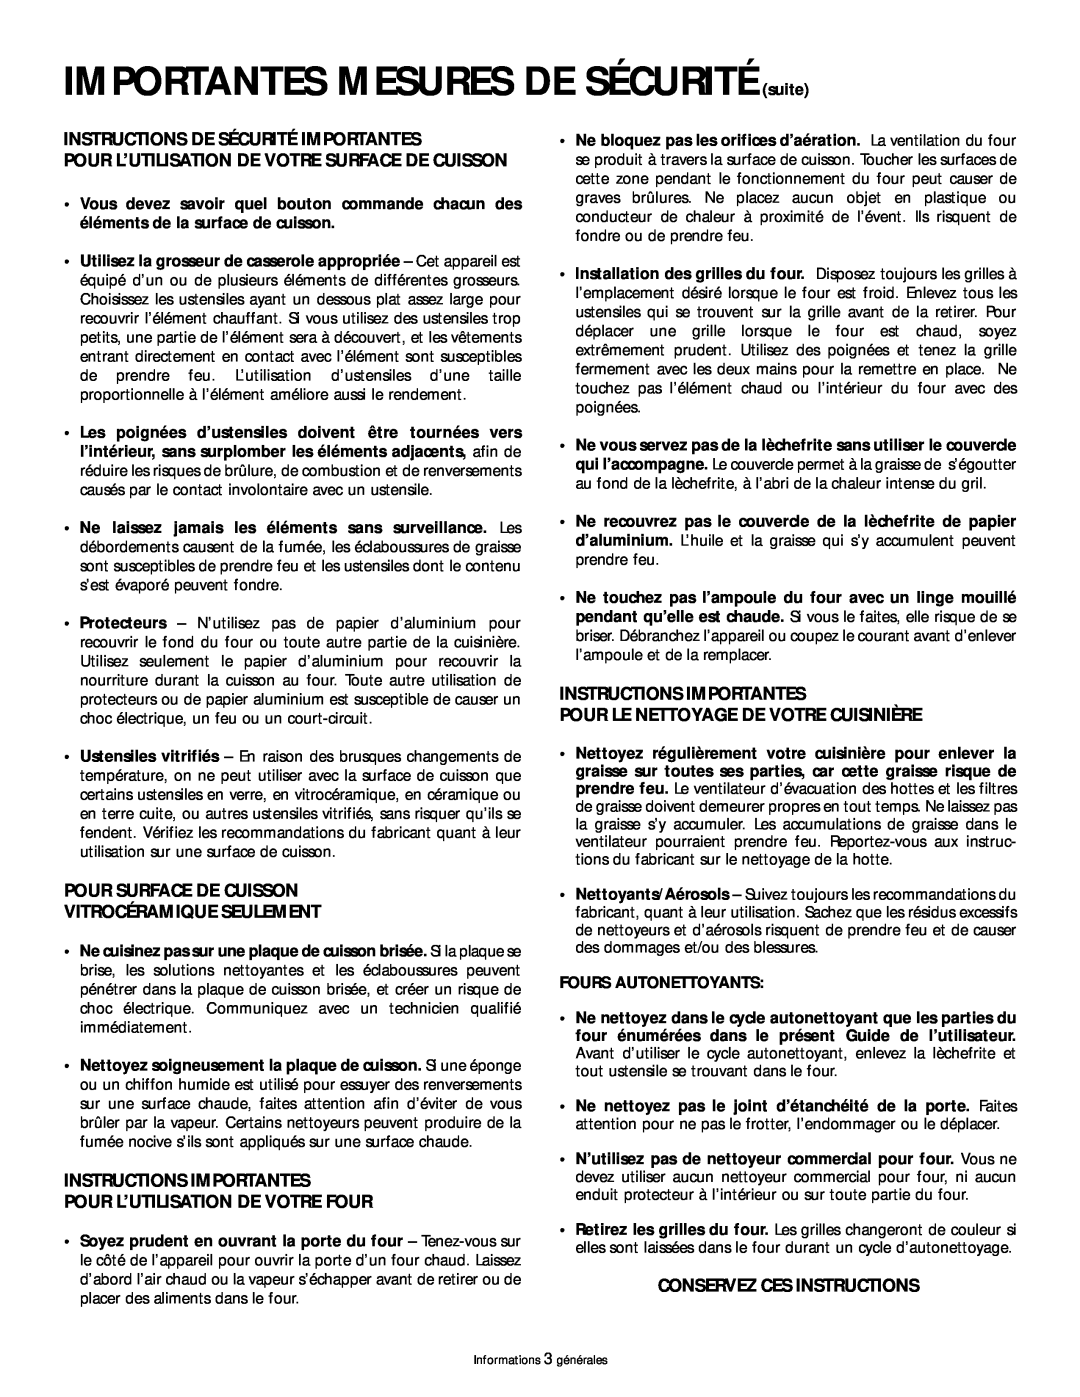 Frigidaire 318200404 IMPORTANTES MESURES DE SÉCURITÉ suite, Instructions De Sécurité Importantes, Fours Autonettoyants 